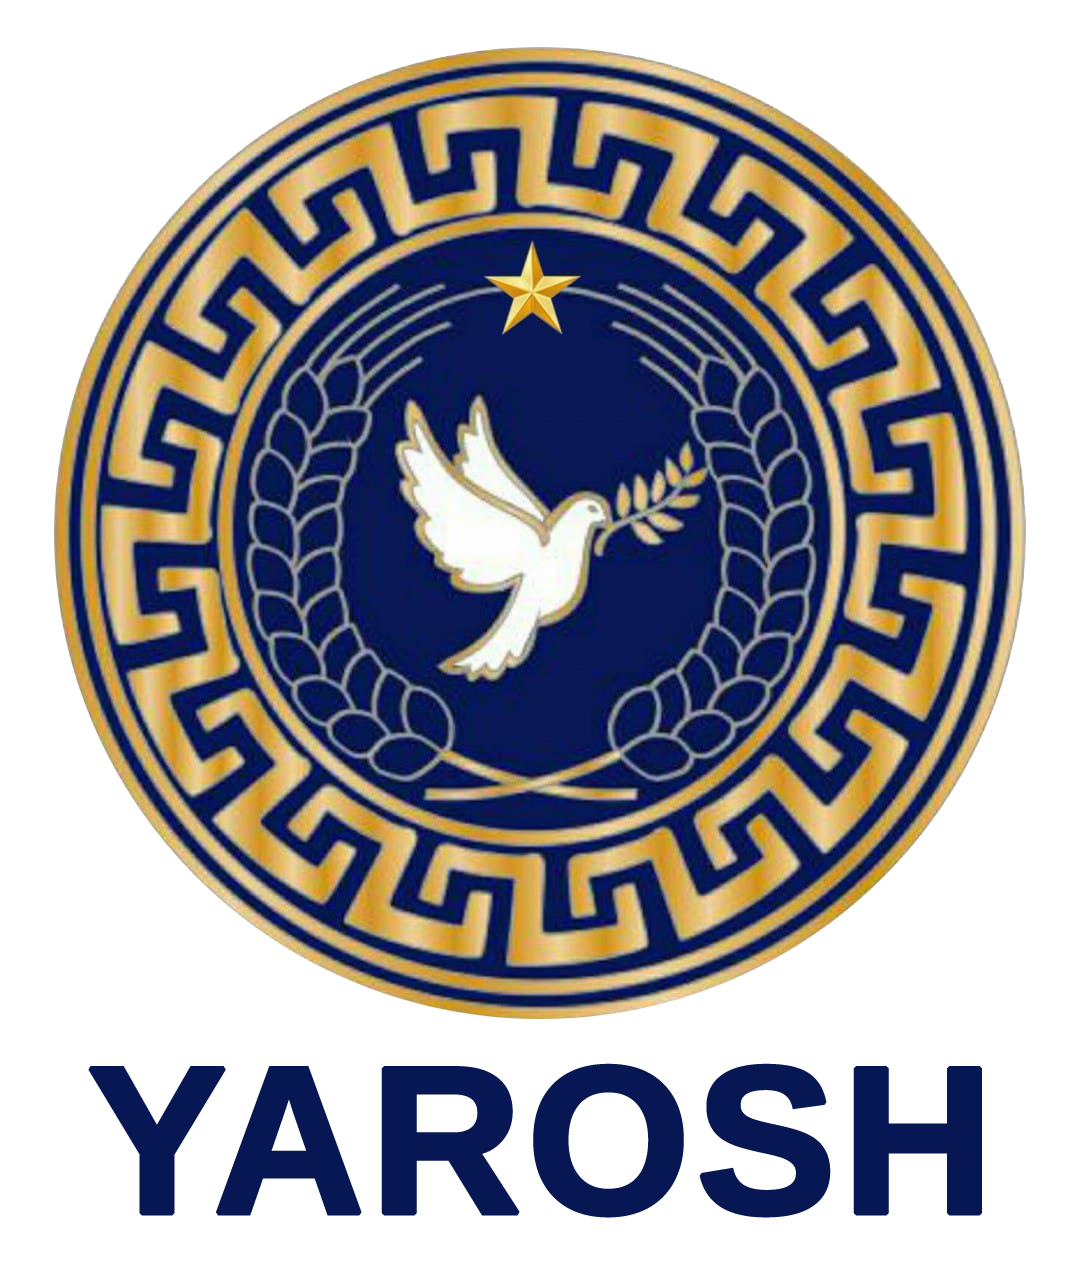 YAROSH